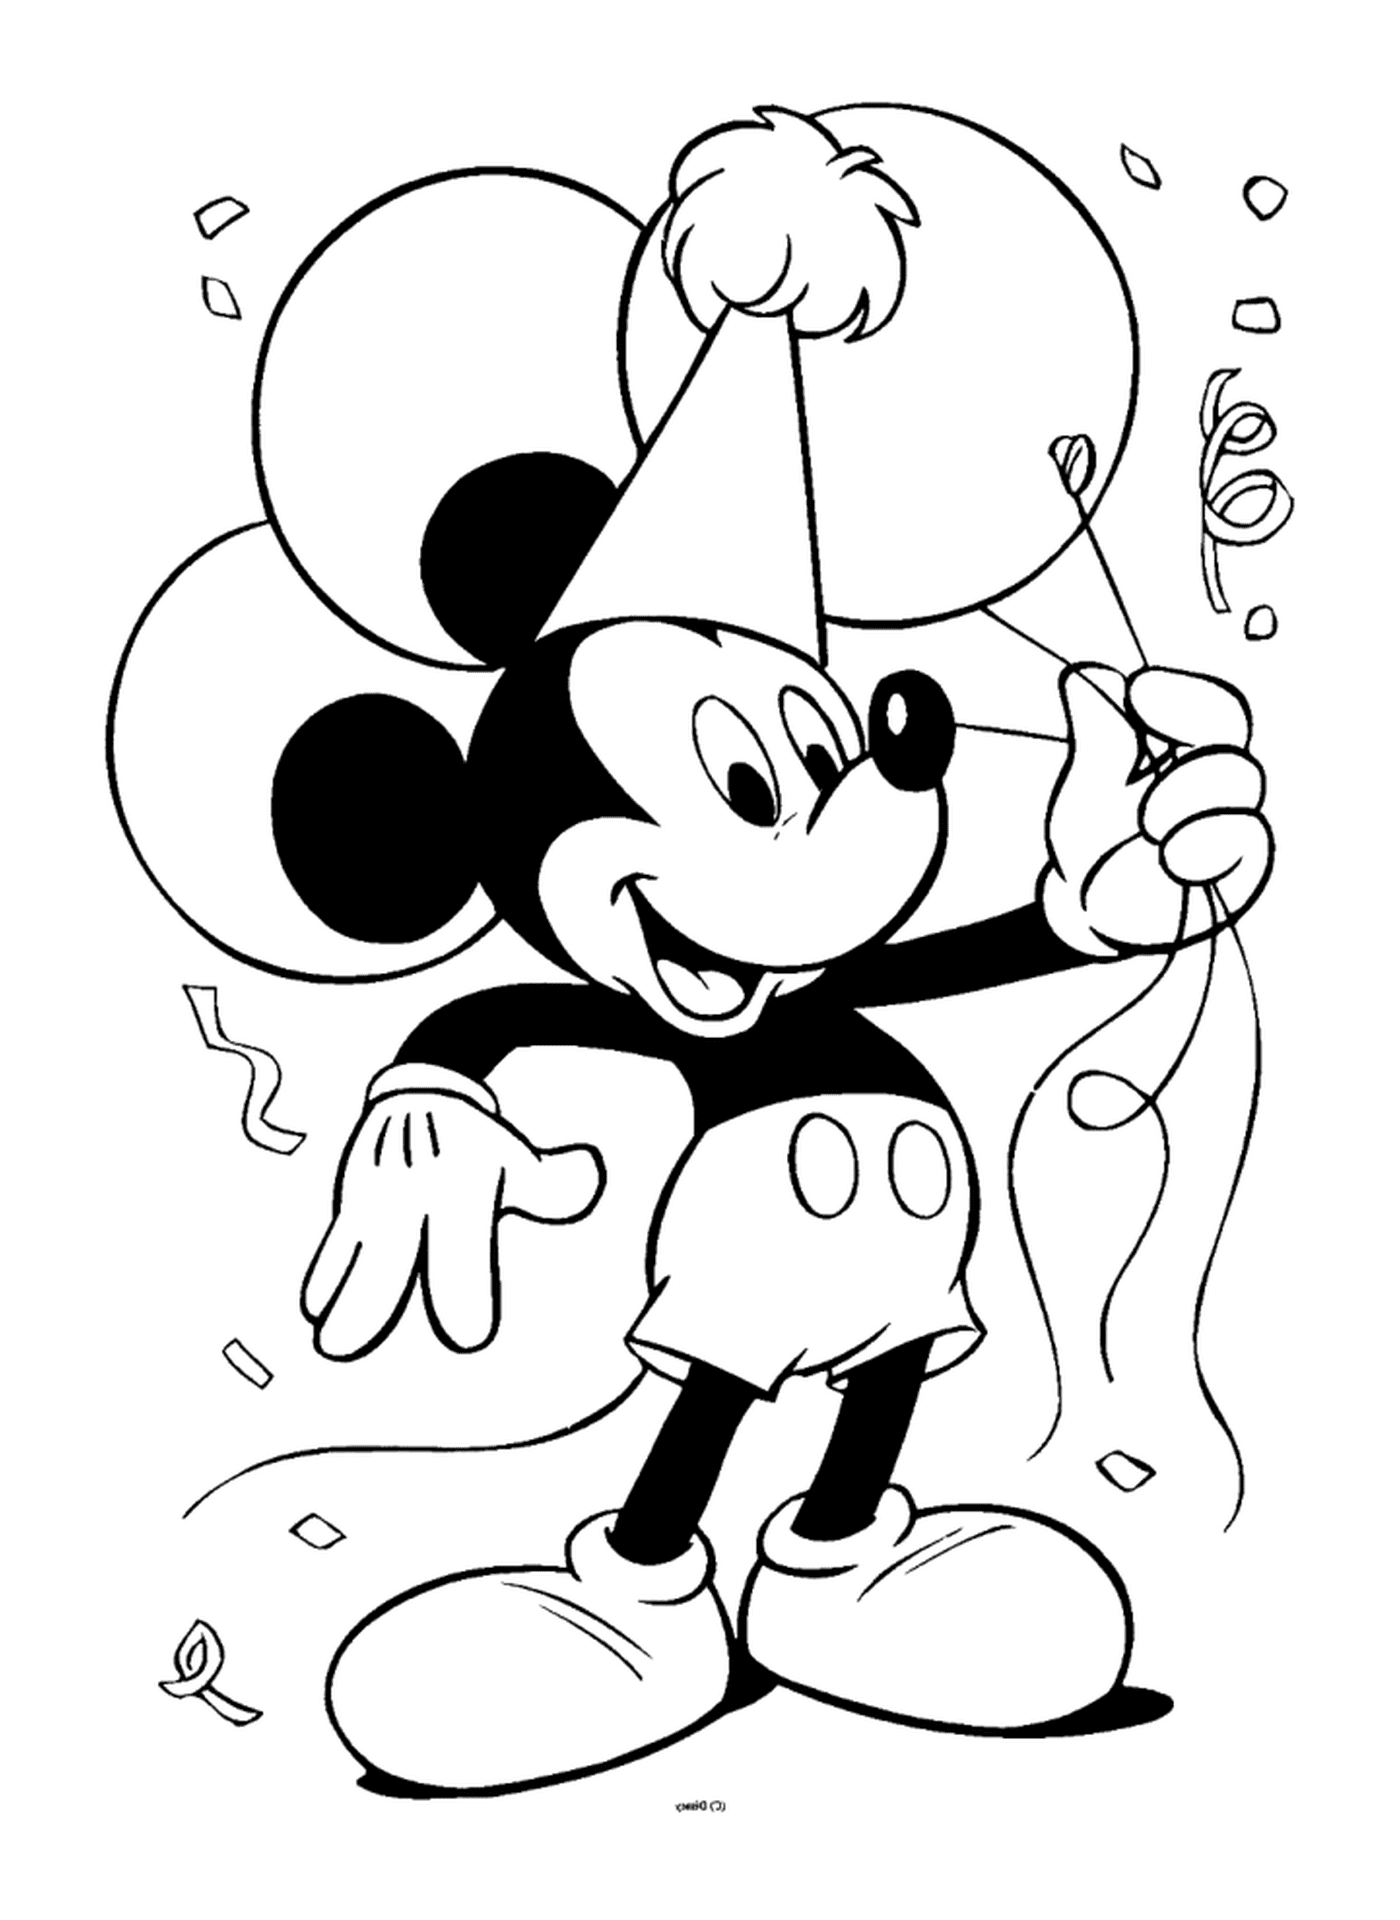  Aniversário do Mickey com balões 